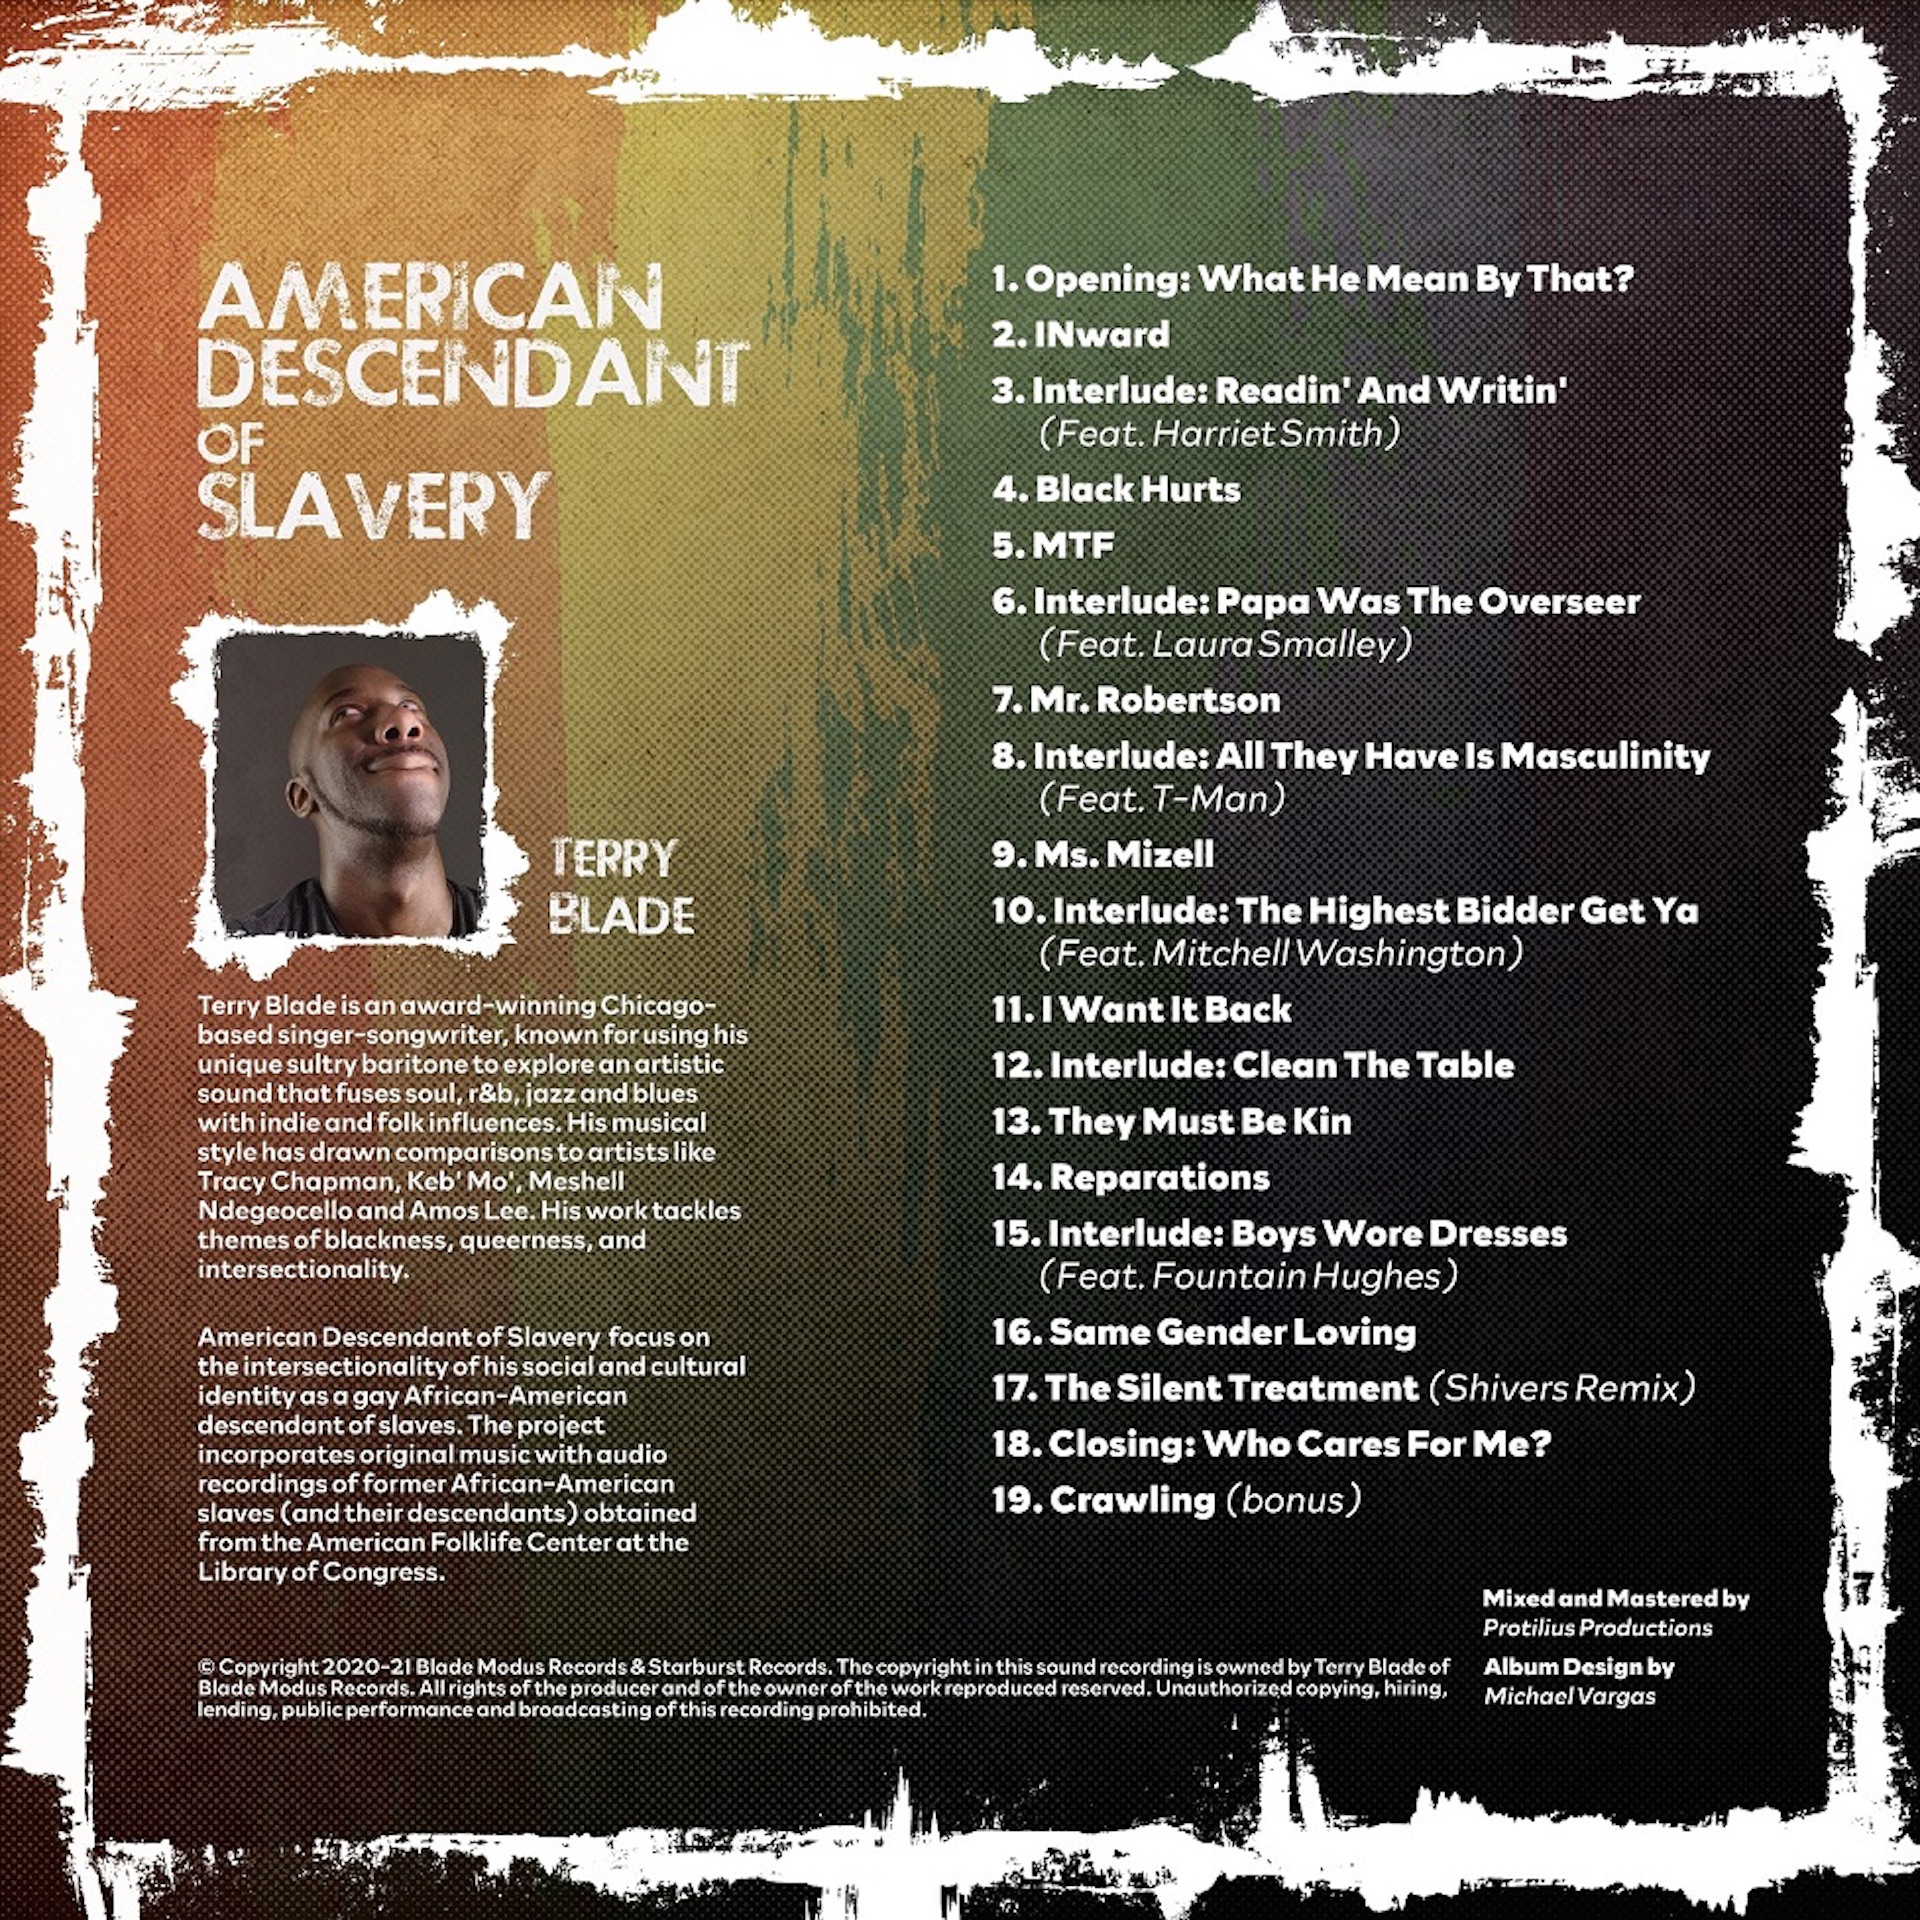 Vega Digital Awards Winner - American Descendant of Slavery, The Album, Terry Blade Music